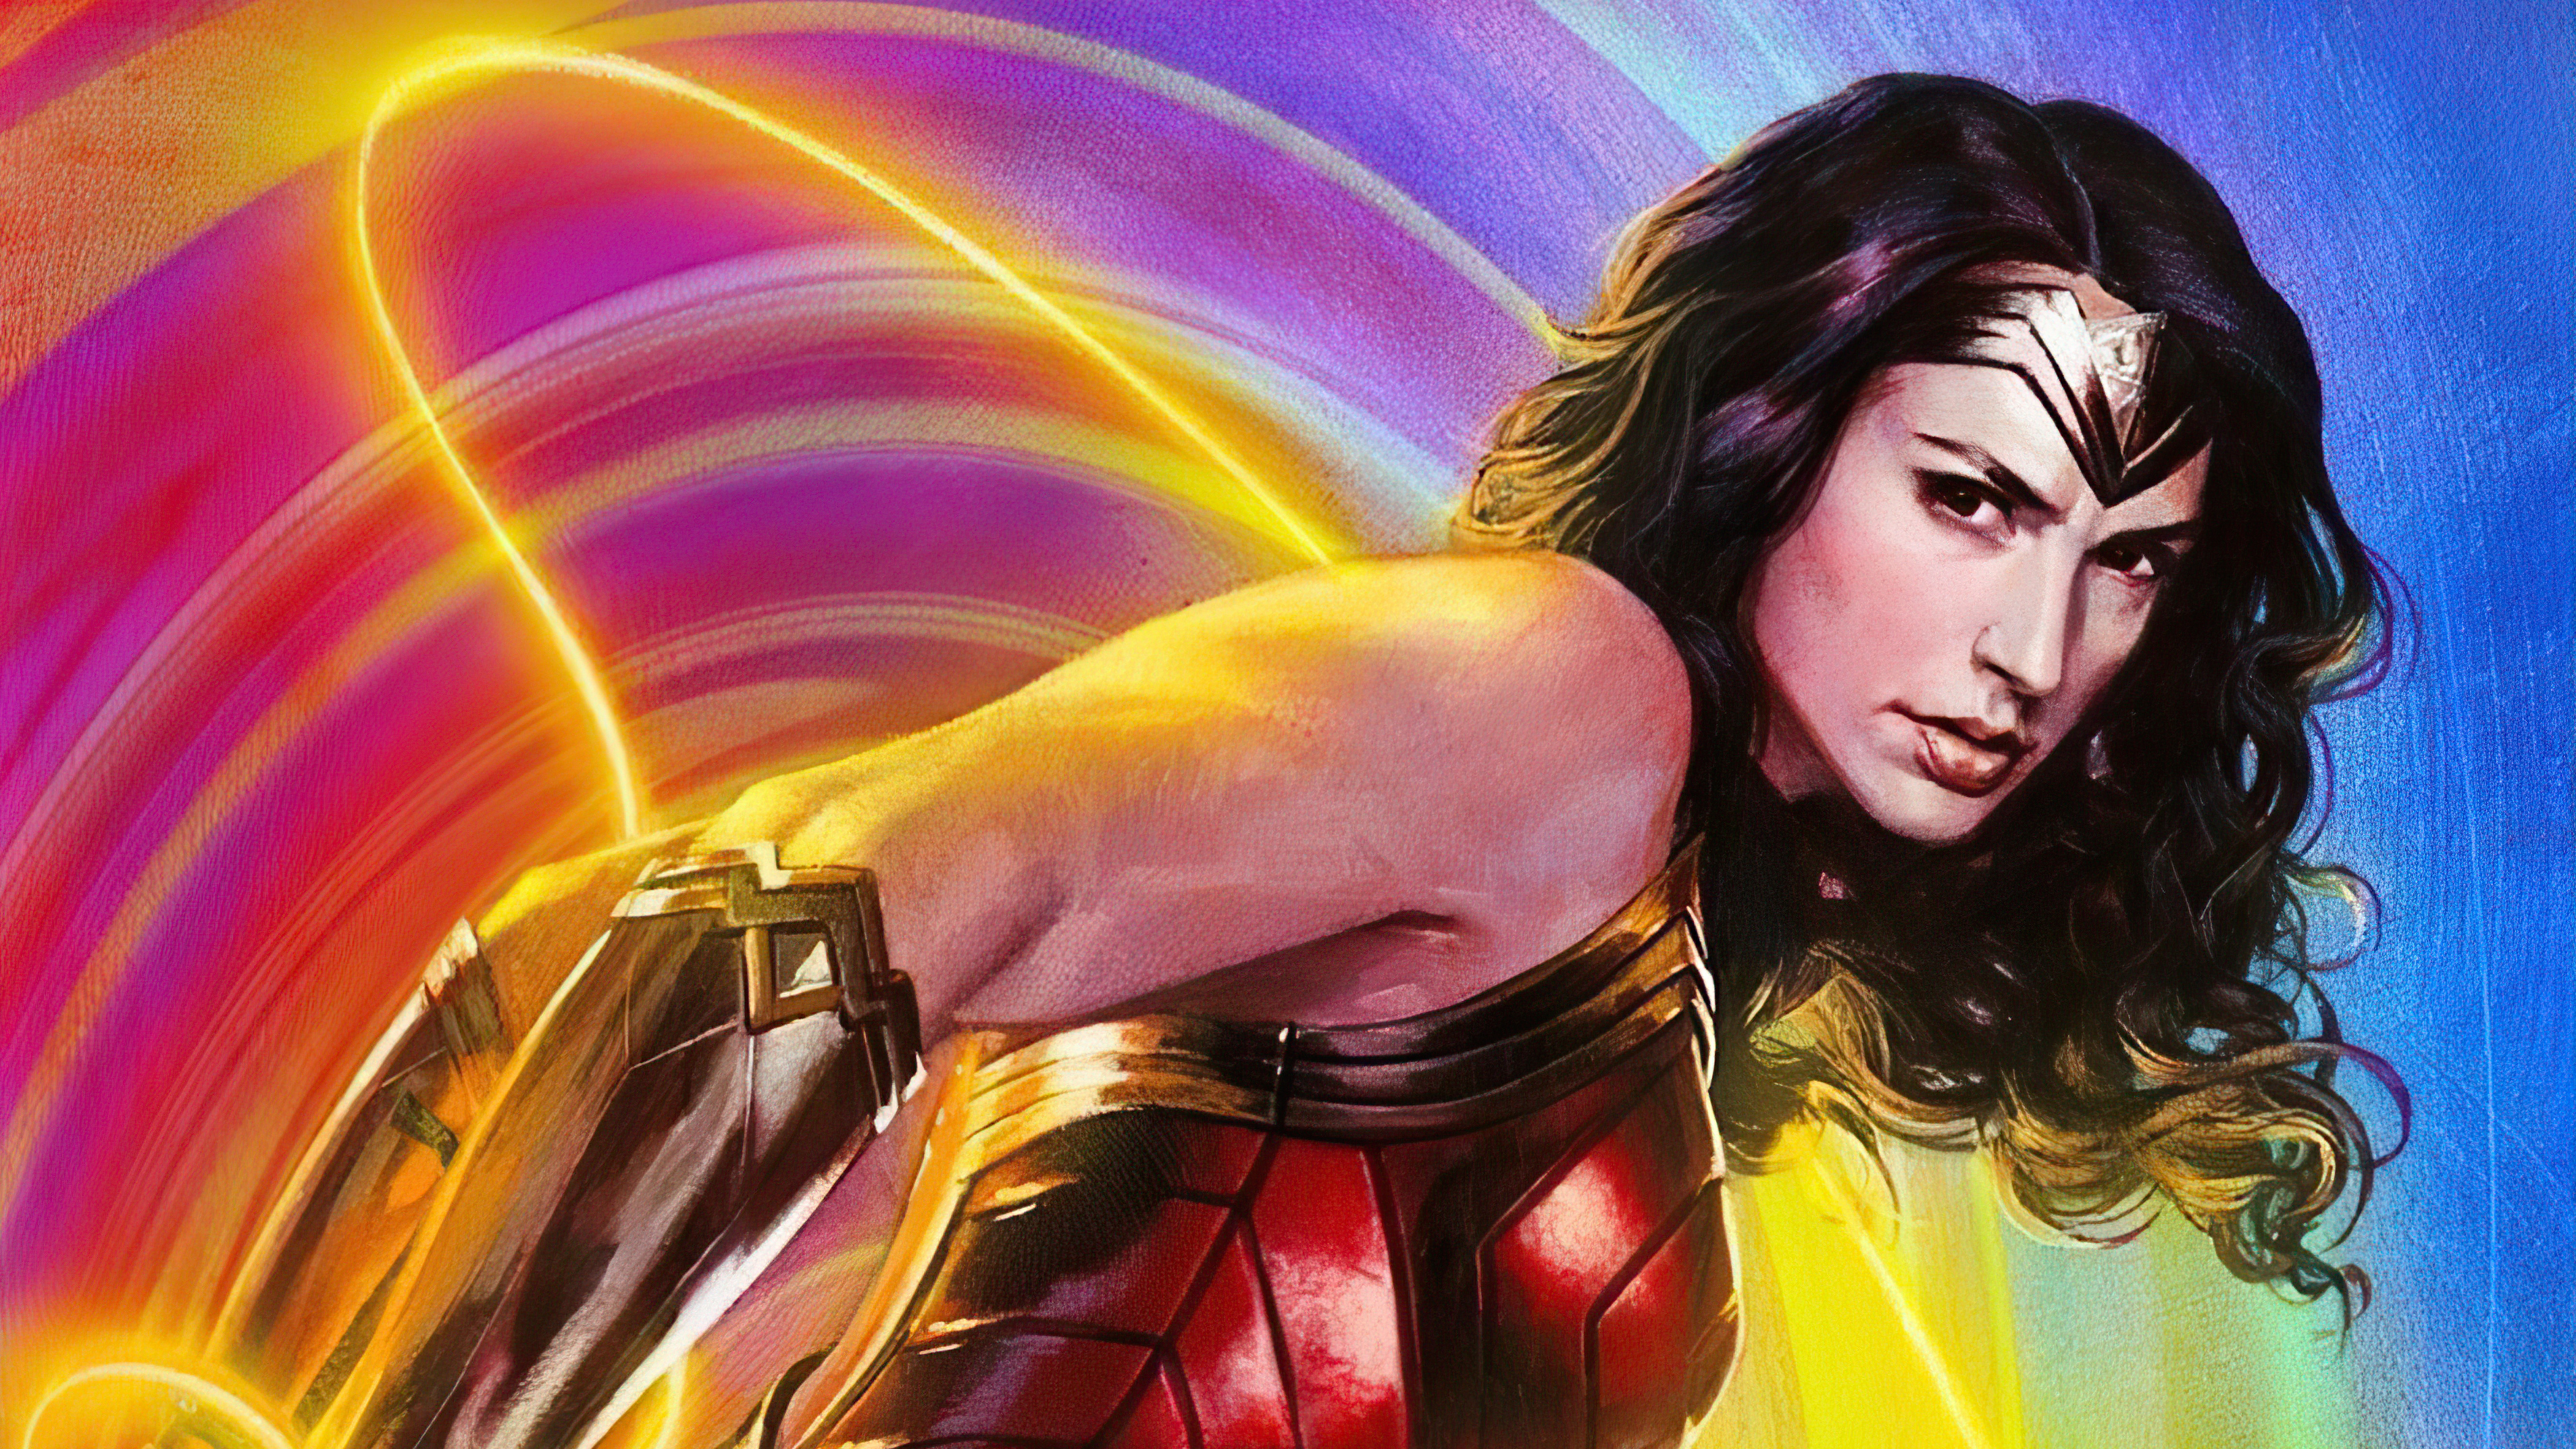 Gal Gadot Wonder Woman Digital Draw Wallpaper Hd Movies 4k Wallpapers ...